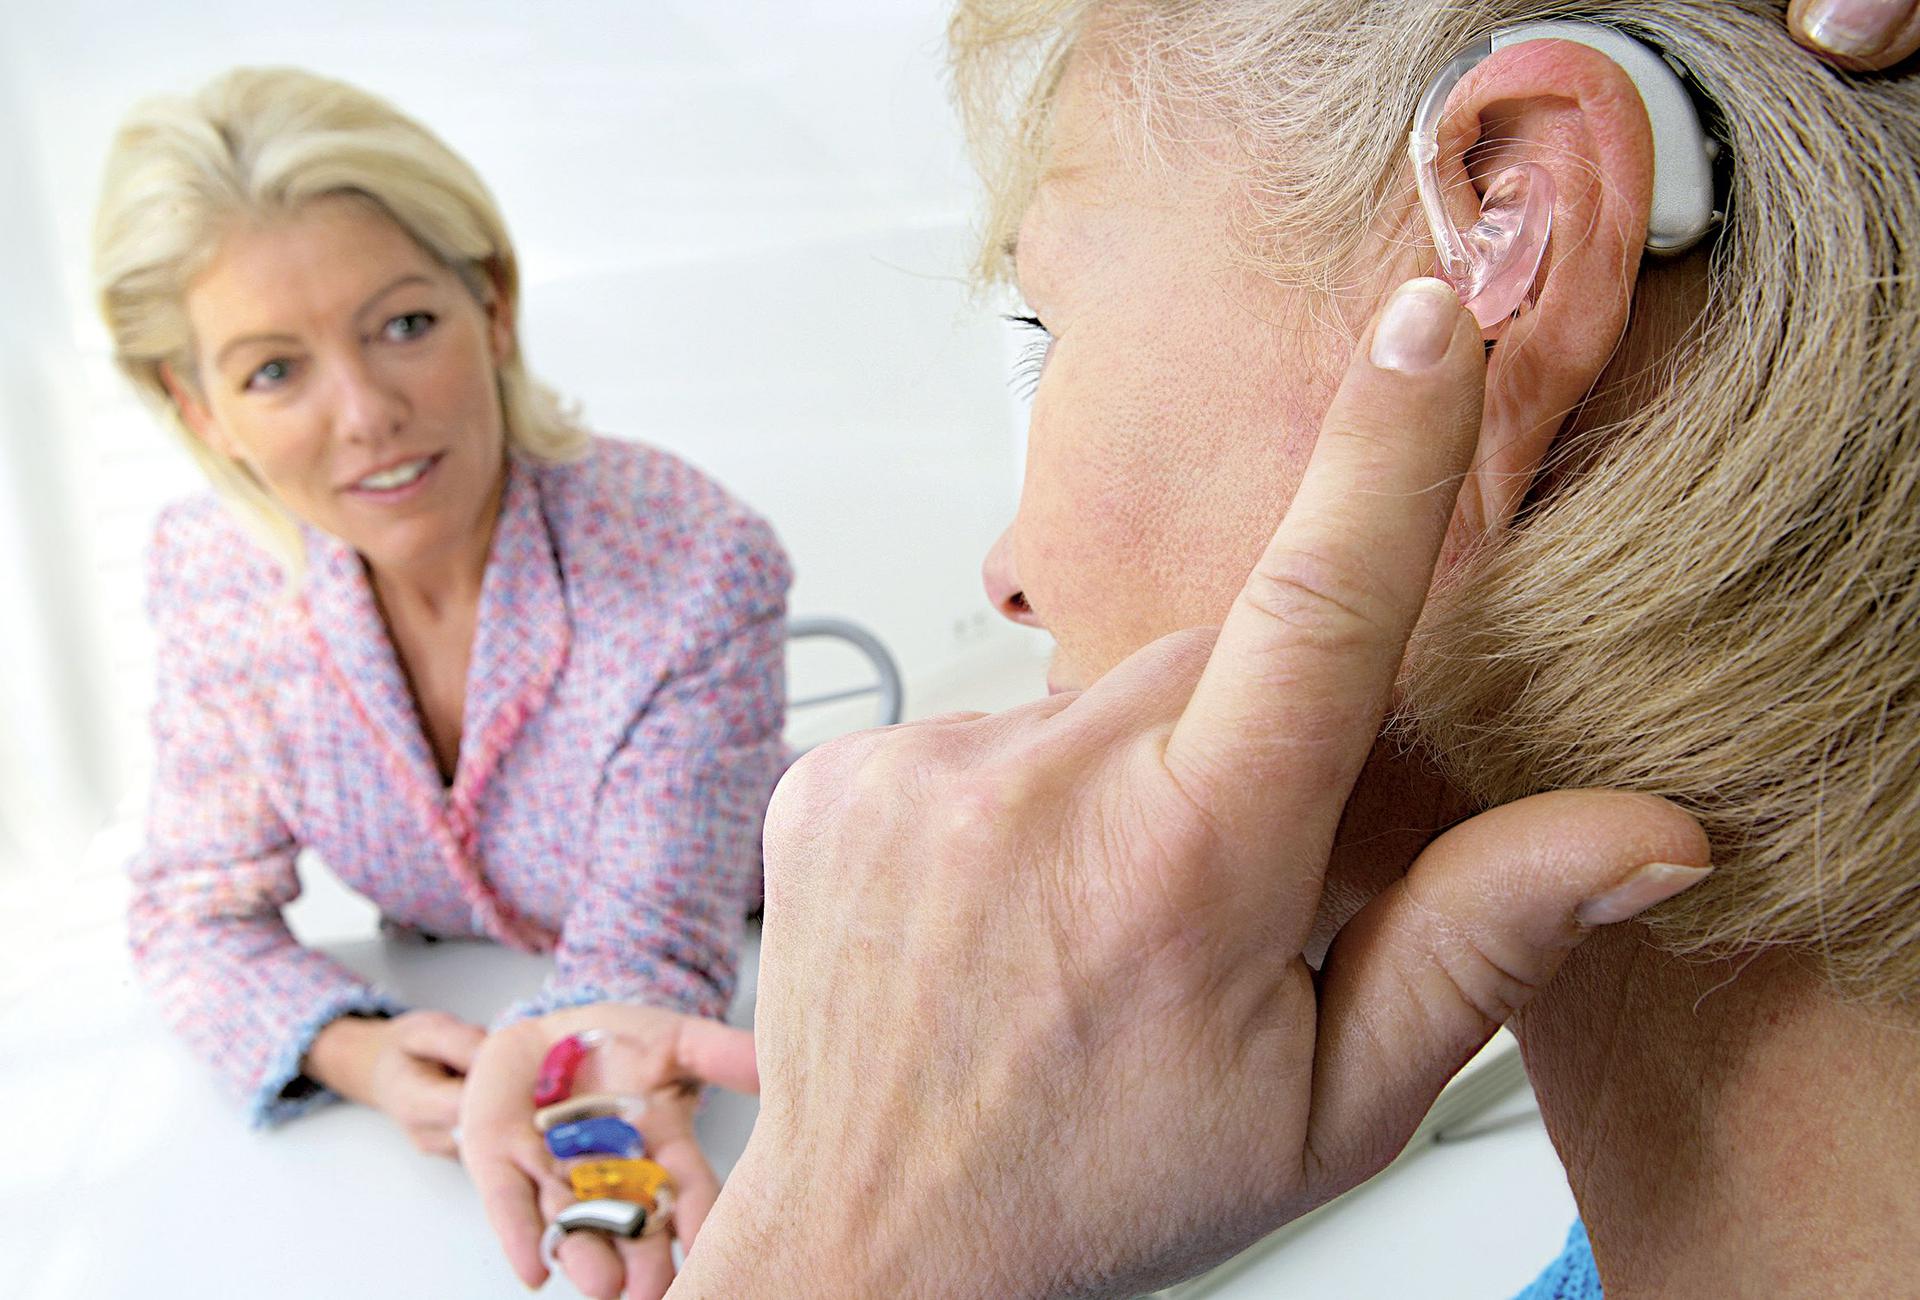 Какие расстройства слуха вам известны и каковы